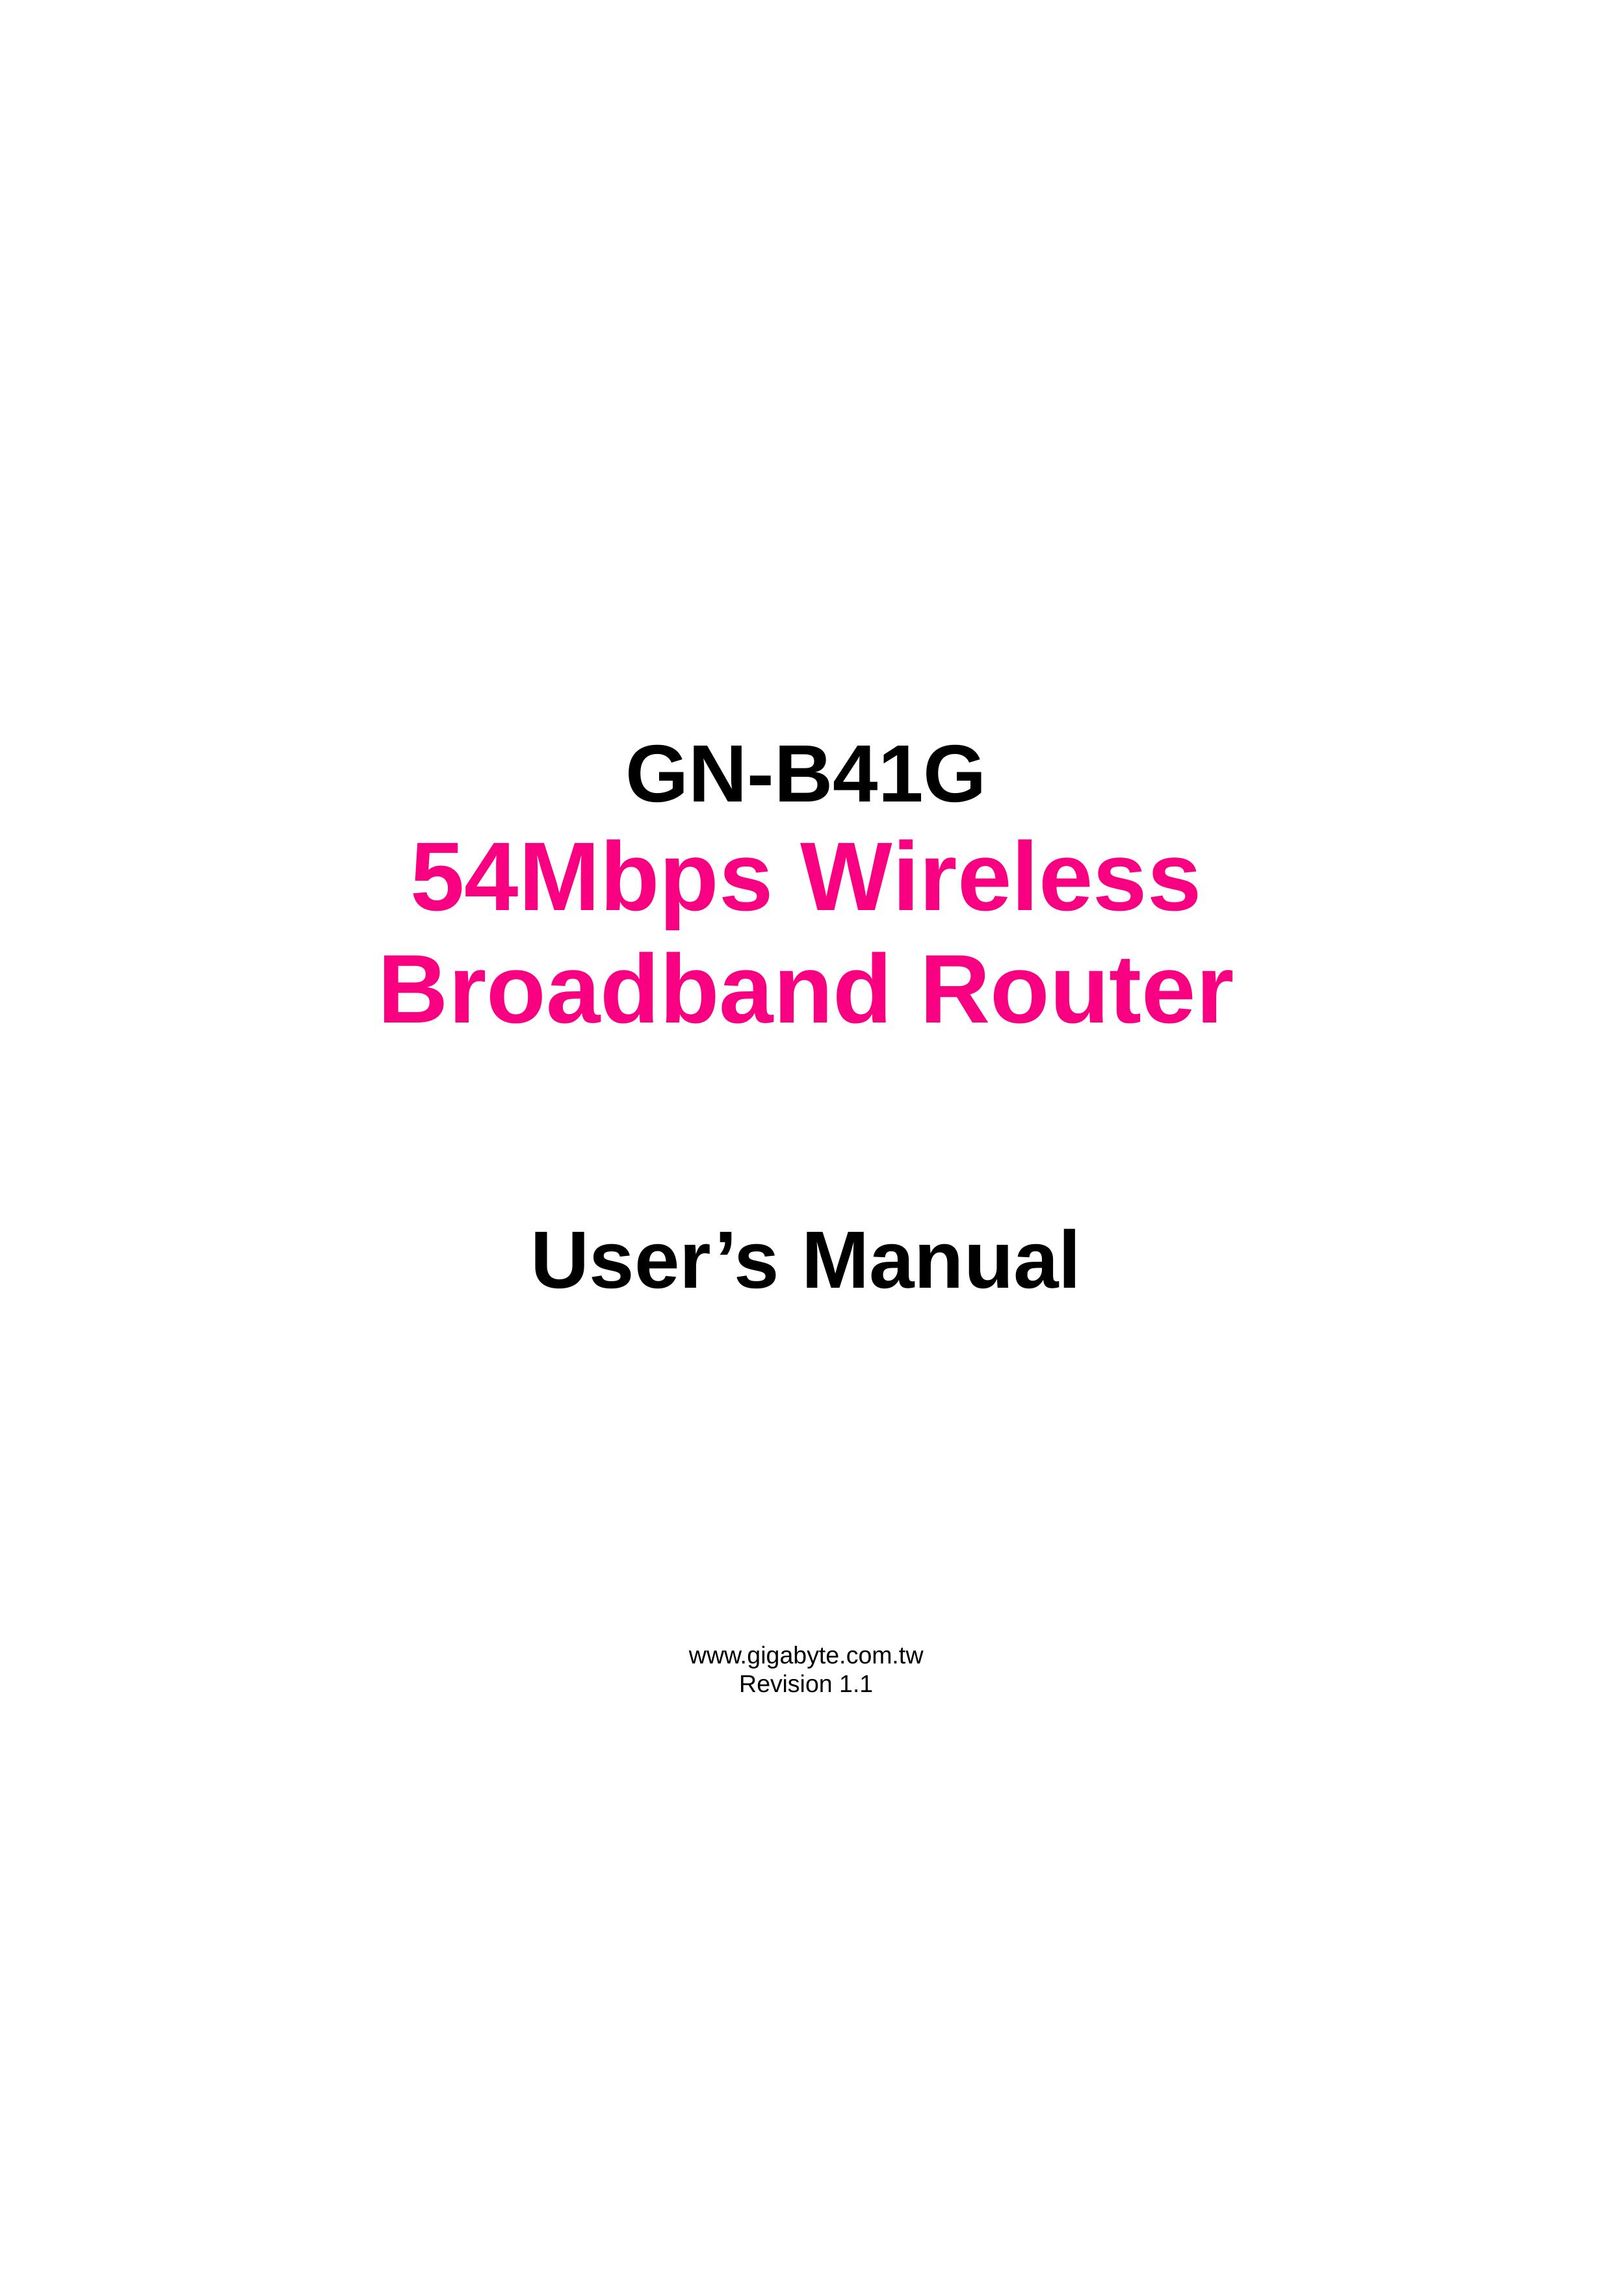 Gigabyte GN-B41G Network Router User Manual